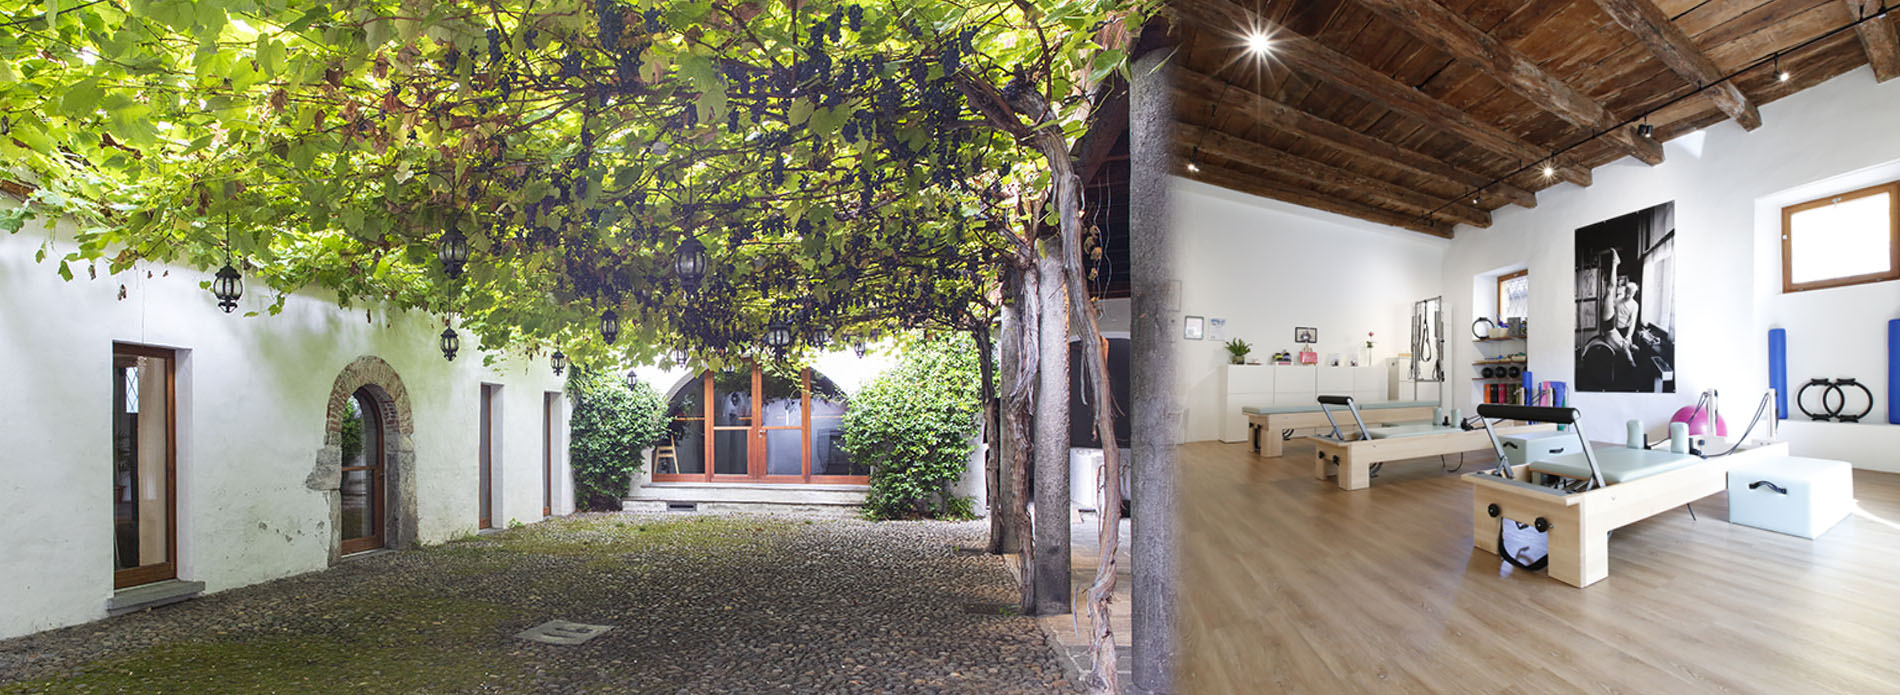 Centro Pilates a Locarno, nella casa del Negromante: cortile interno.